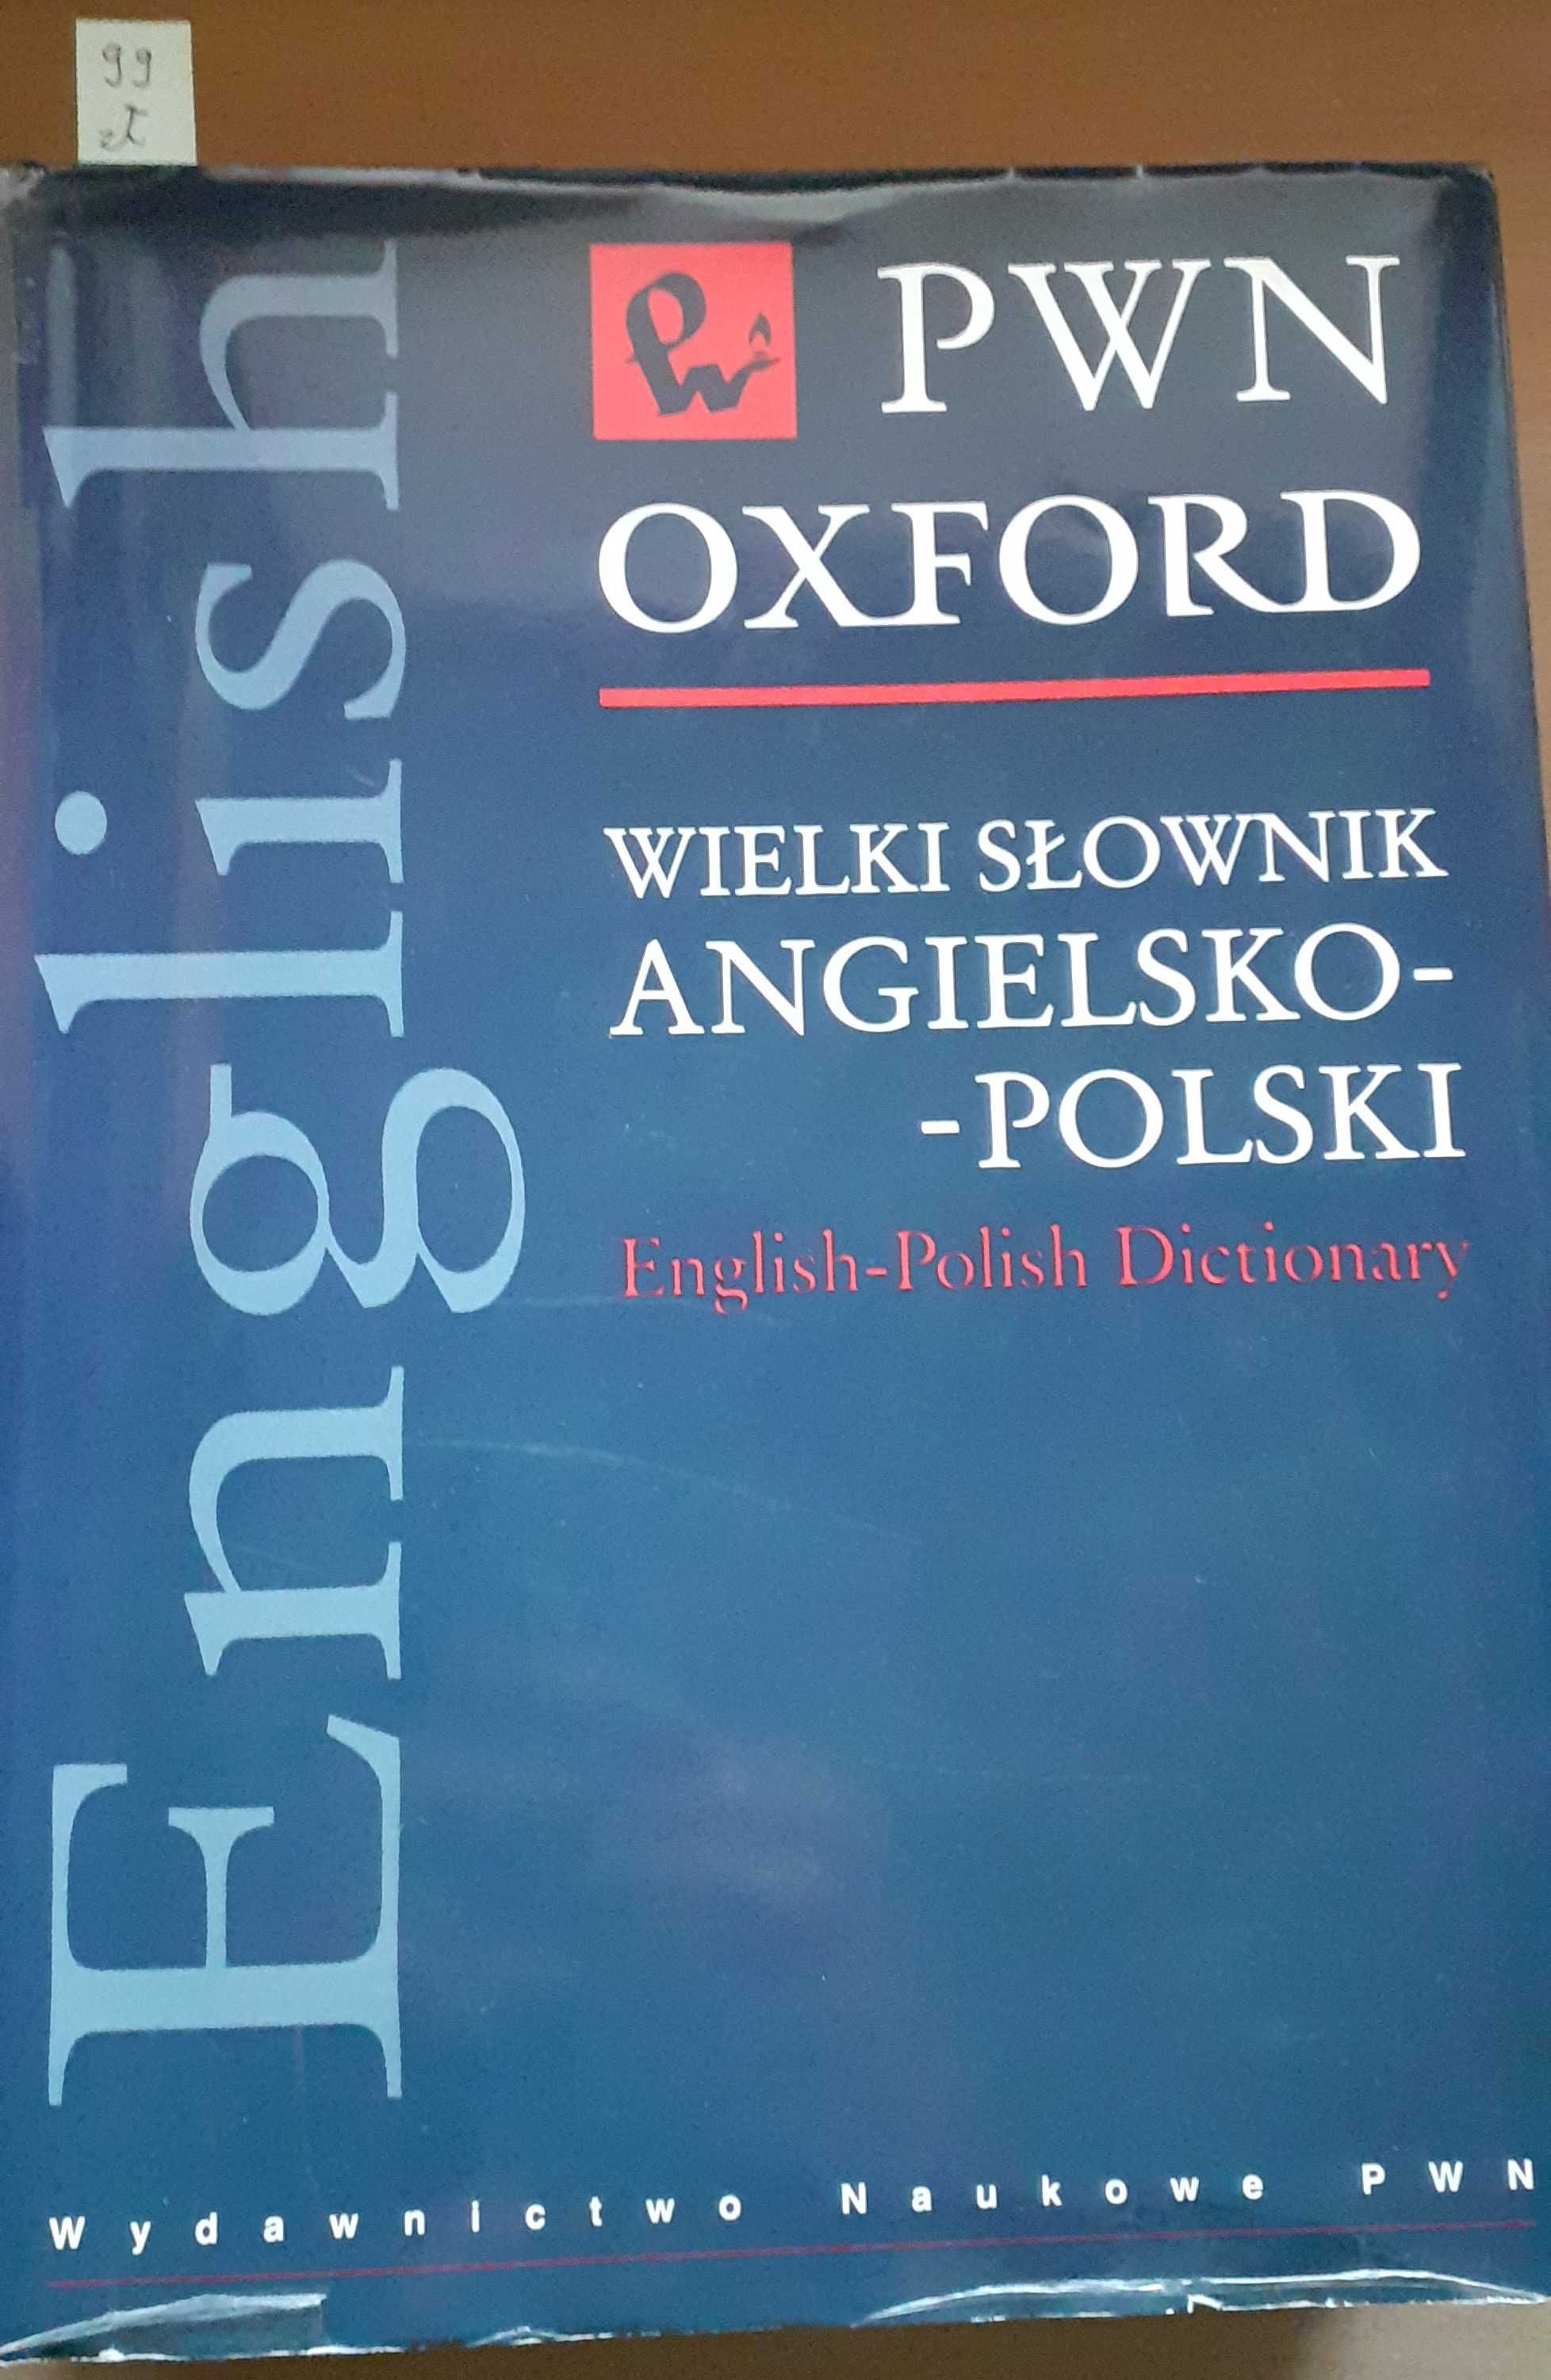 Wielki słownik angielsko-polski PWN Oxford Praca zbiorowa